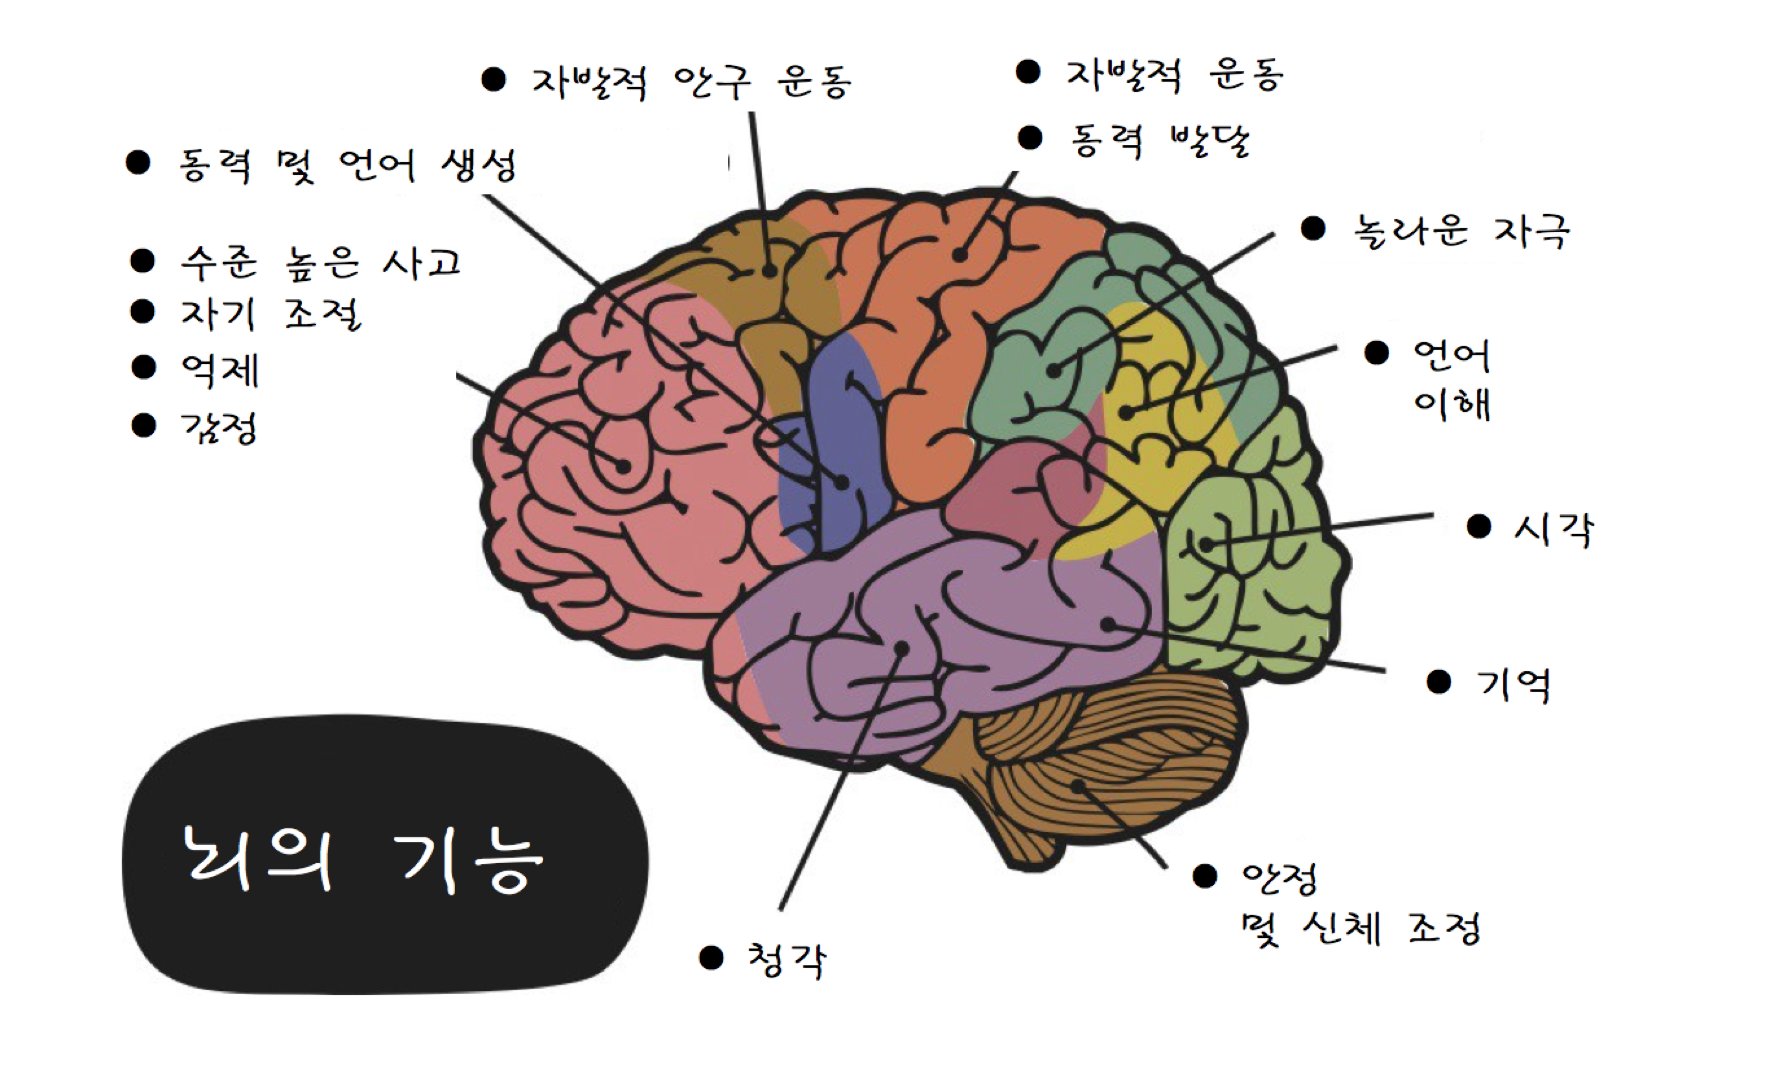 번역] 우리 뇌는 컴퓨터와 얼마나 다른지!. ..를 뇌 신경 가소성 측면에서 살펴보았다. | by 이영규 | Medium